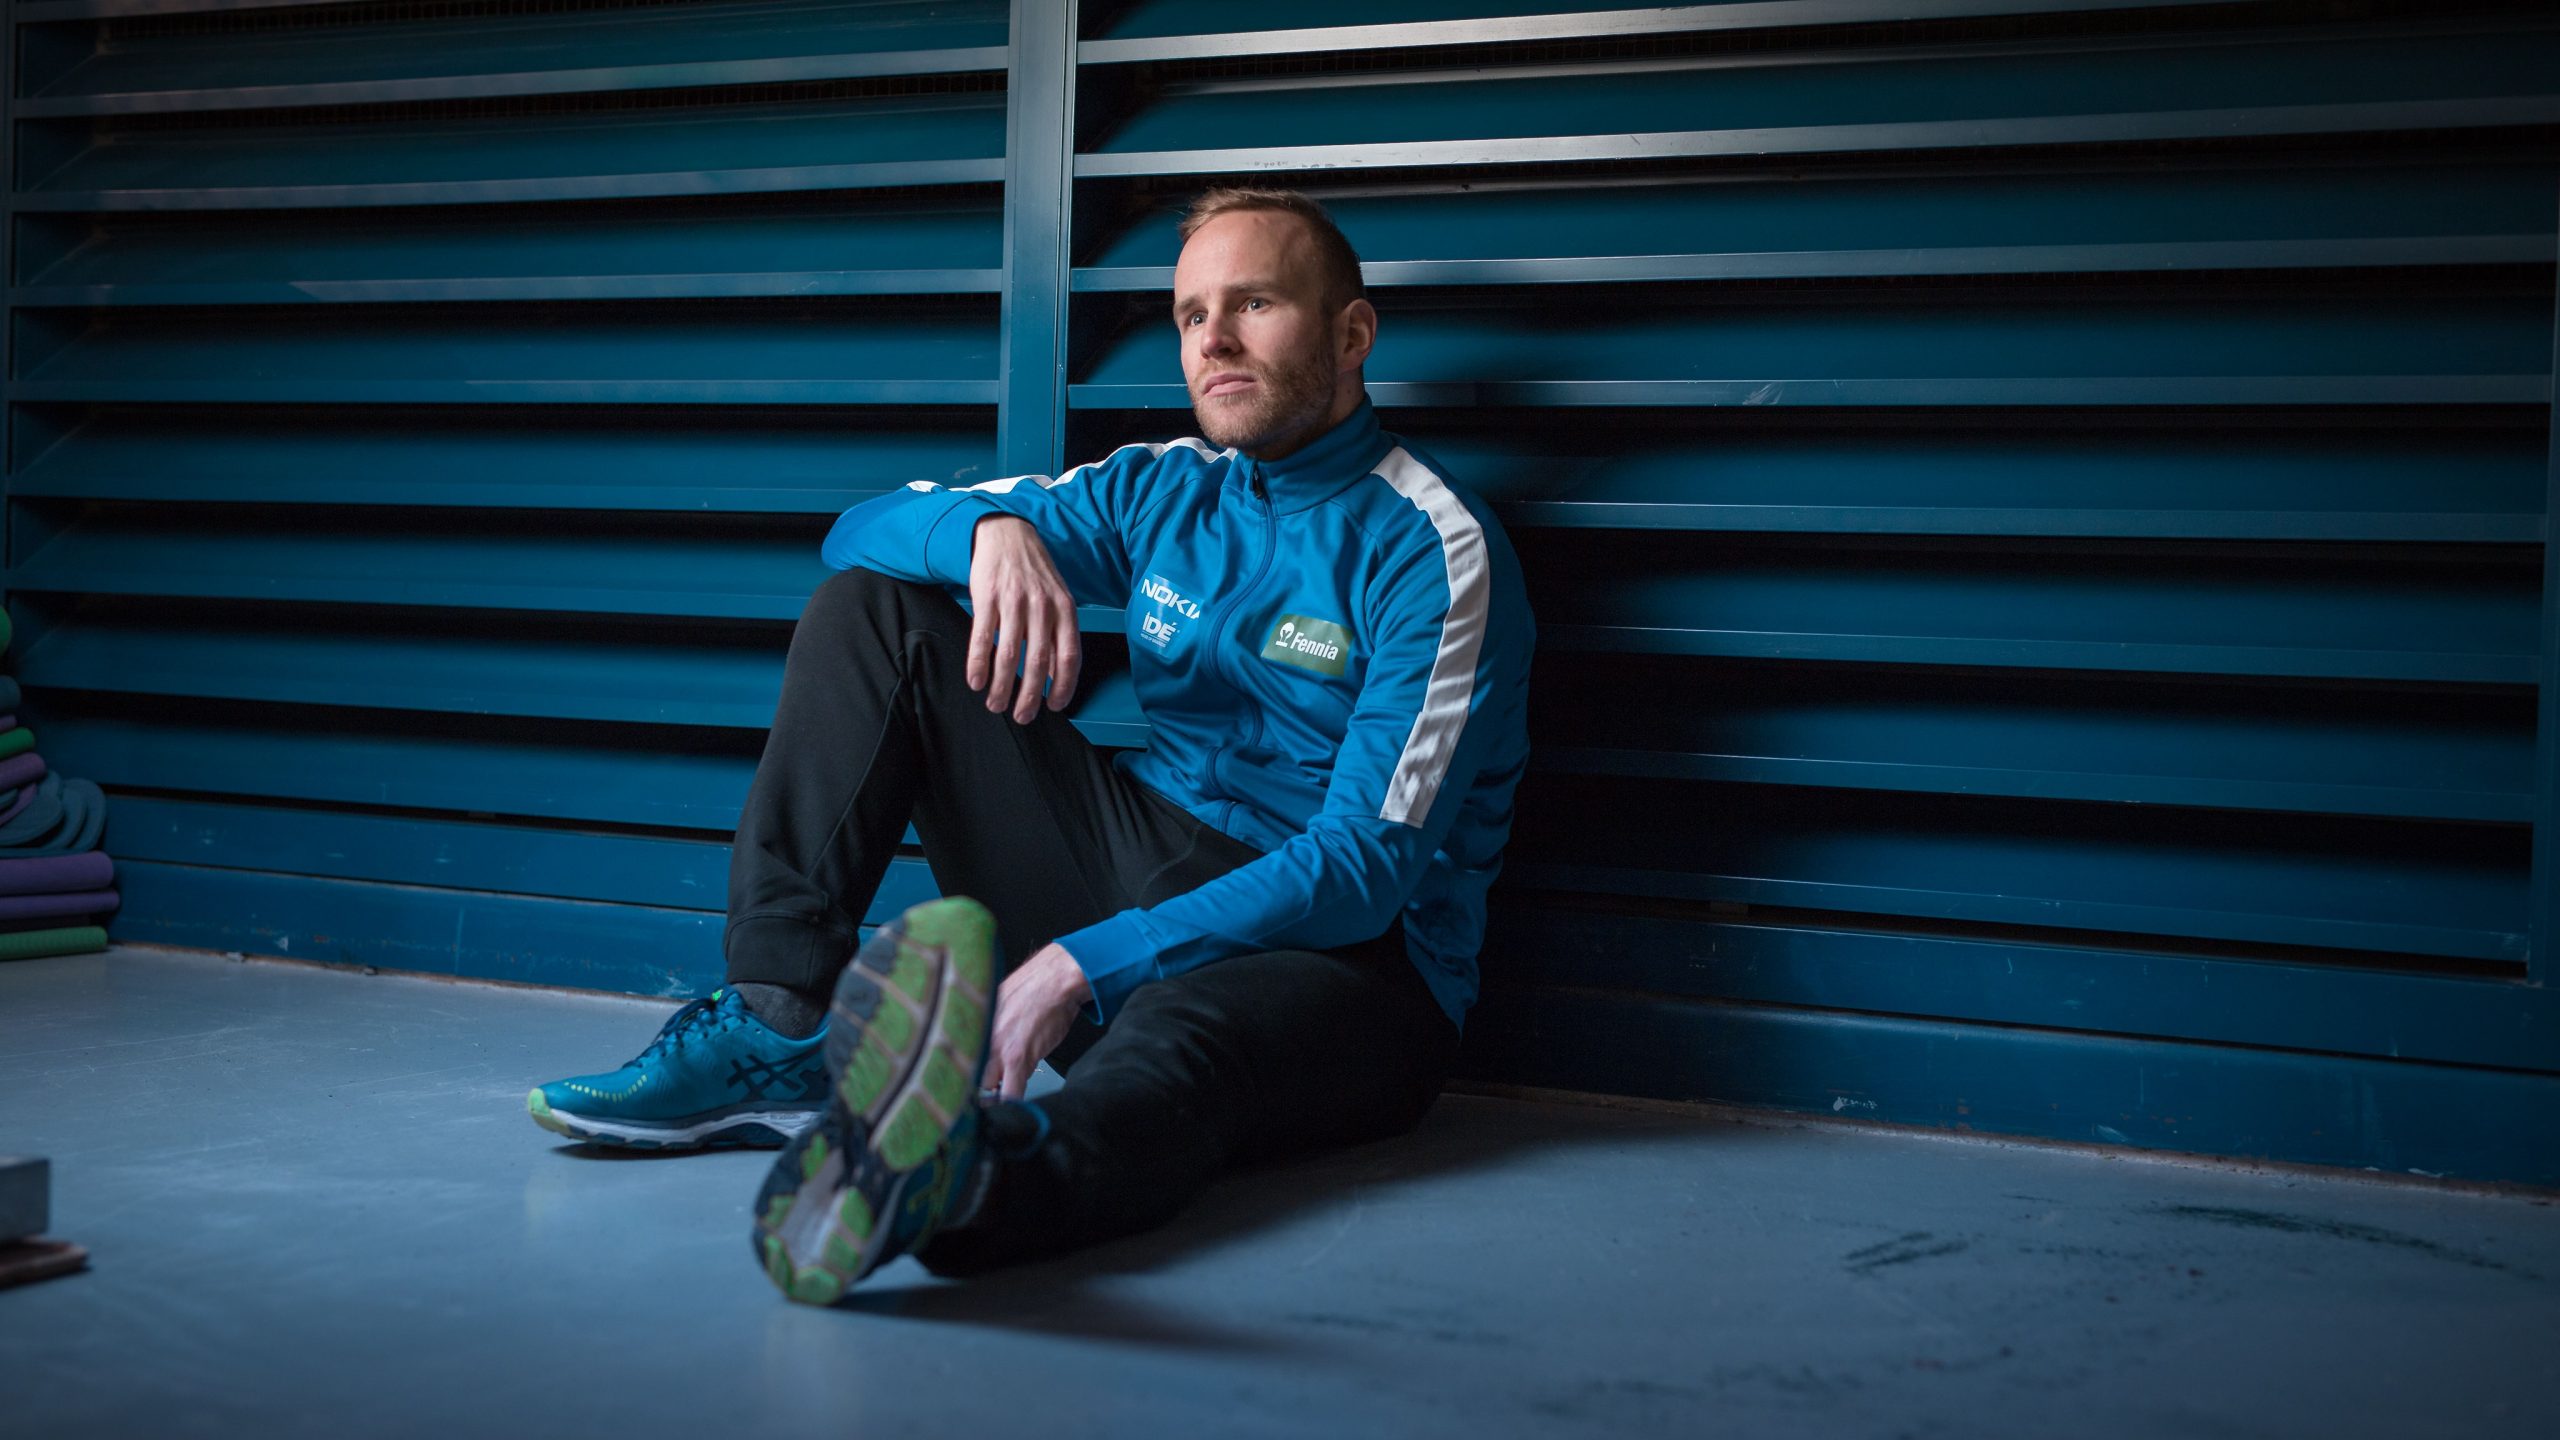 Pikaluistelija Mika Poutala kaksi vuotta huippu-urheilun jälkeen:  ”Menetetyt mitalit muokkasivat minua enemmän kuin saavutukset” | KD-Lehti